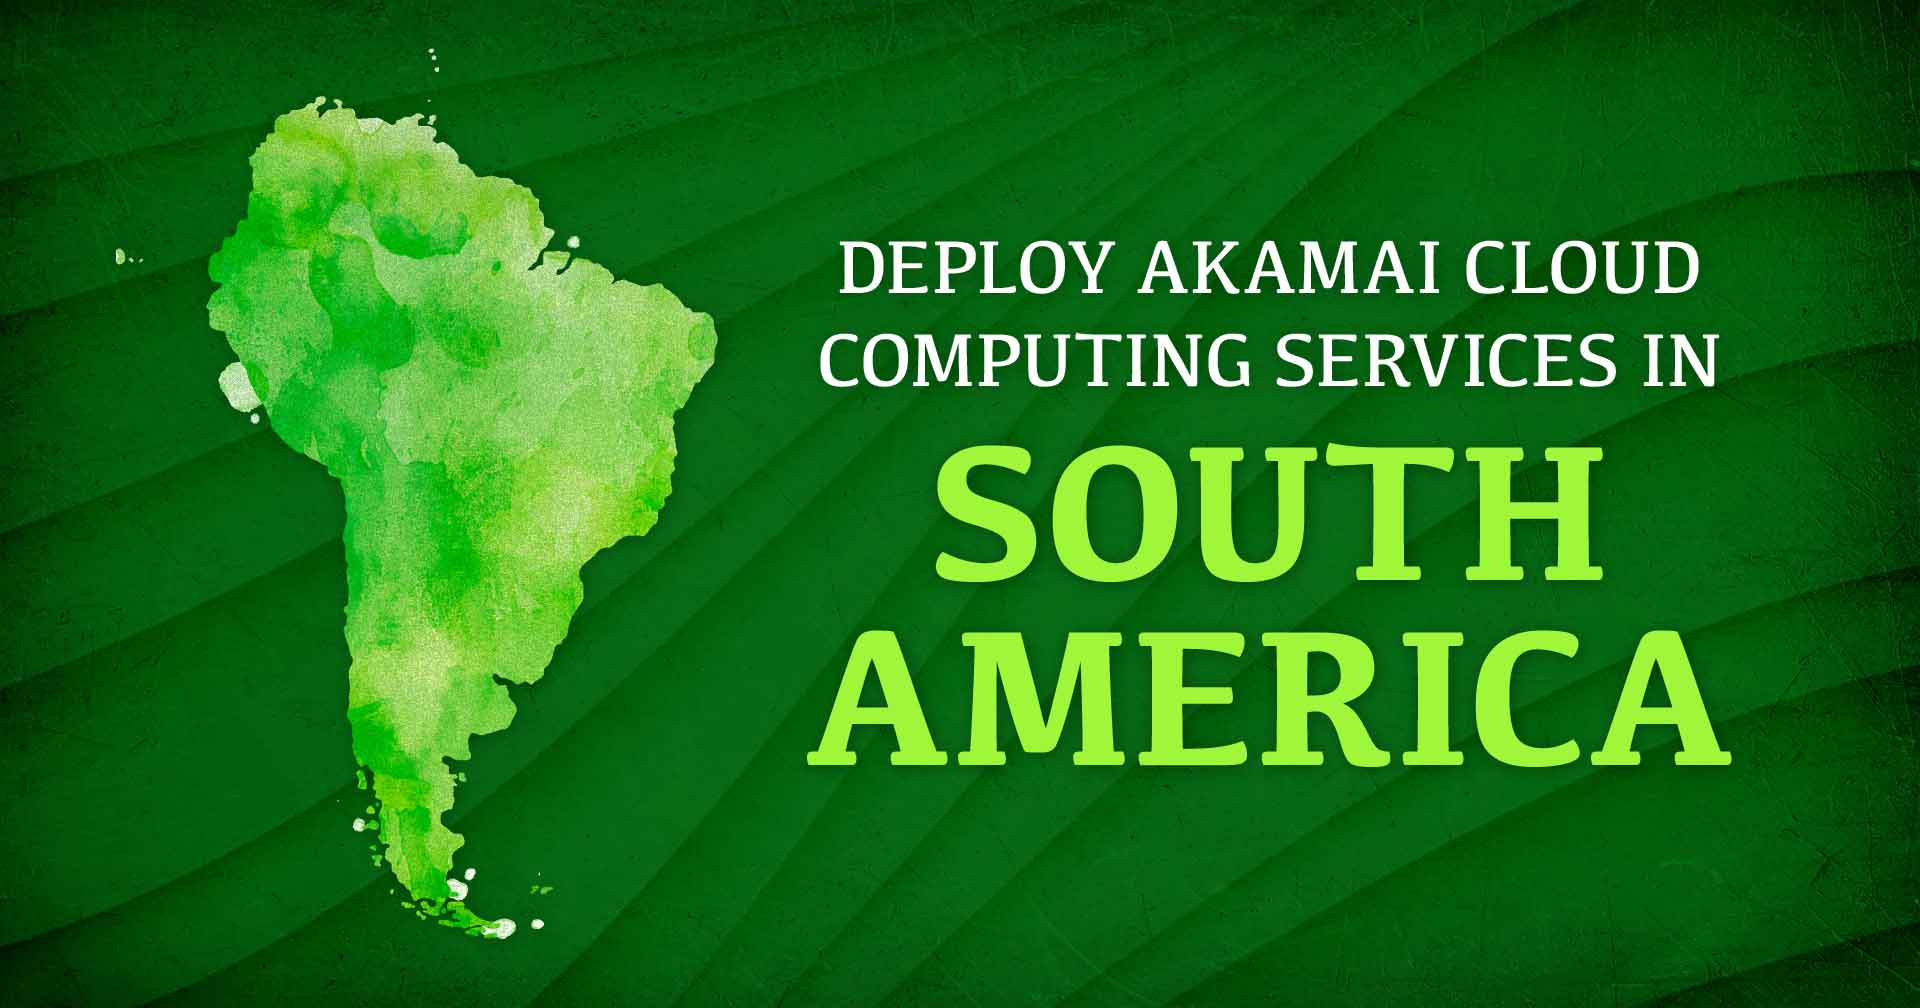 남미에 Akamai 클라우드 컴퓨팅 서비스 배포라는 텍스트 옆에 남미를 이미지로 표현한 것입니다.